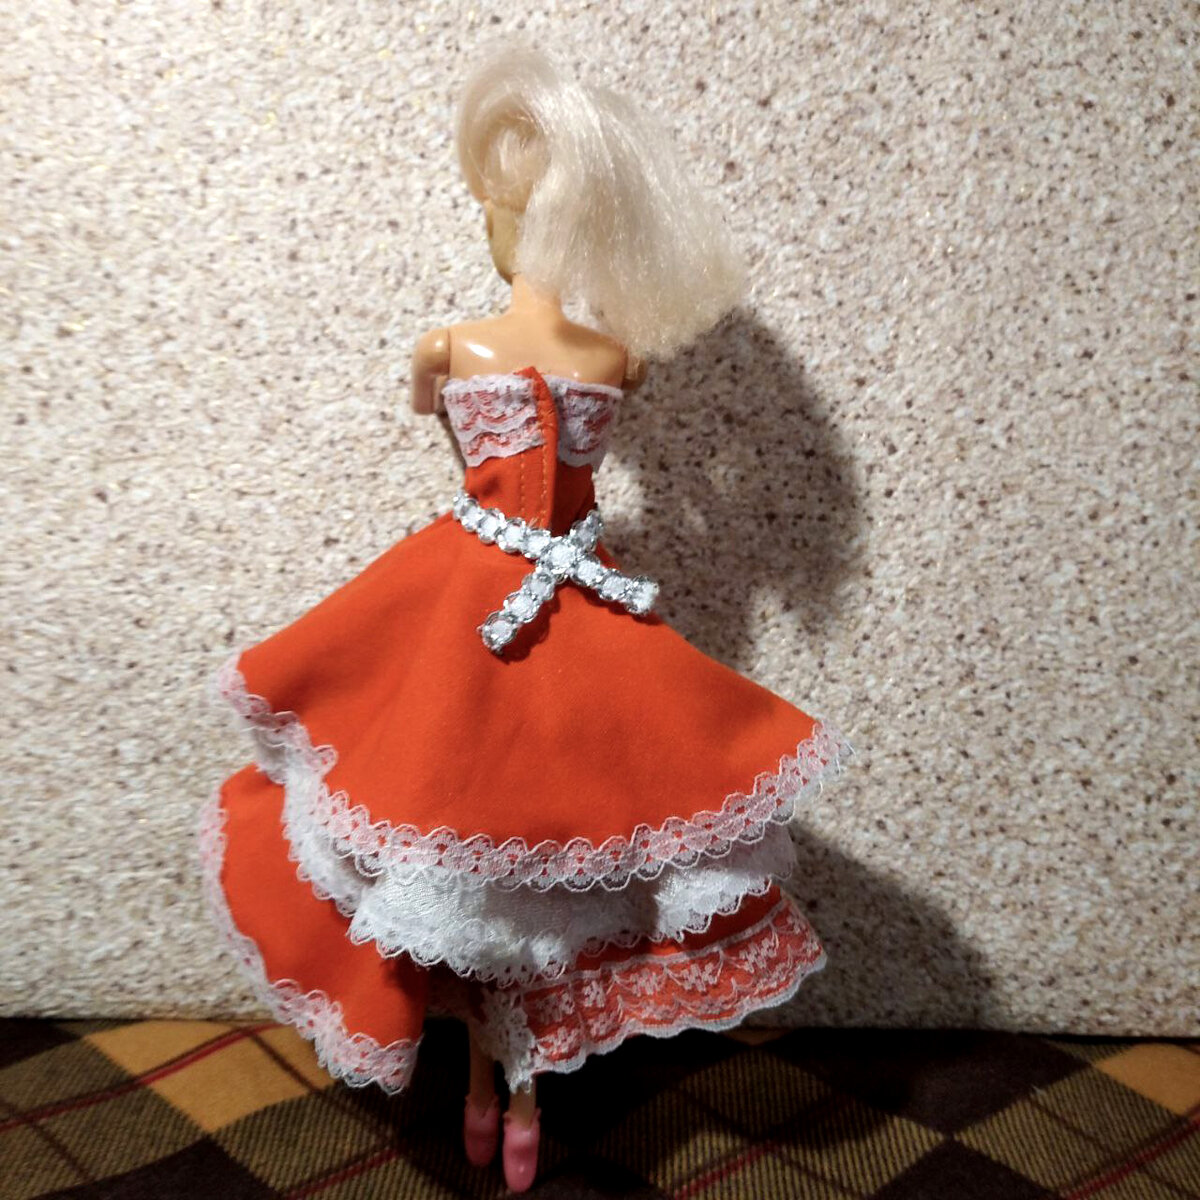 Футболка и юбка для куклы Барби | Самошвейка - сайт о шитье и рукоделии